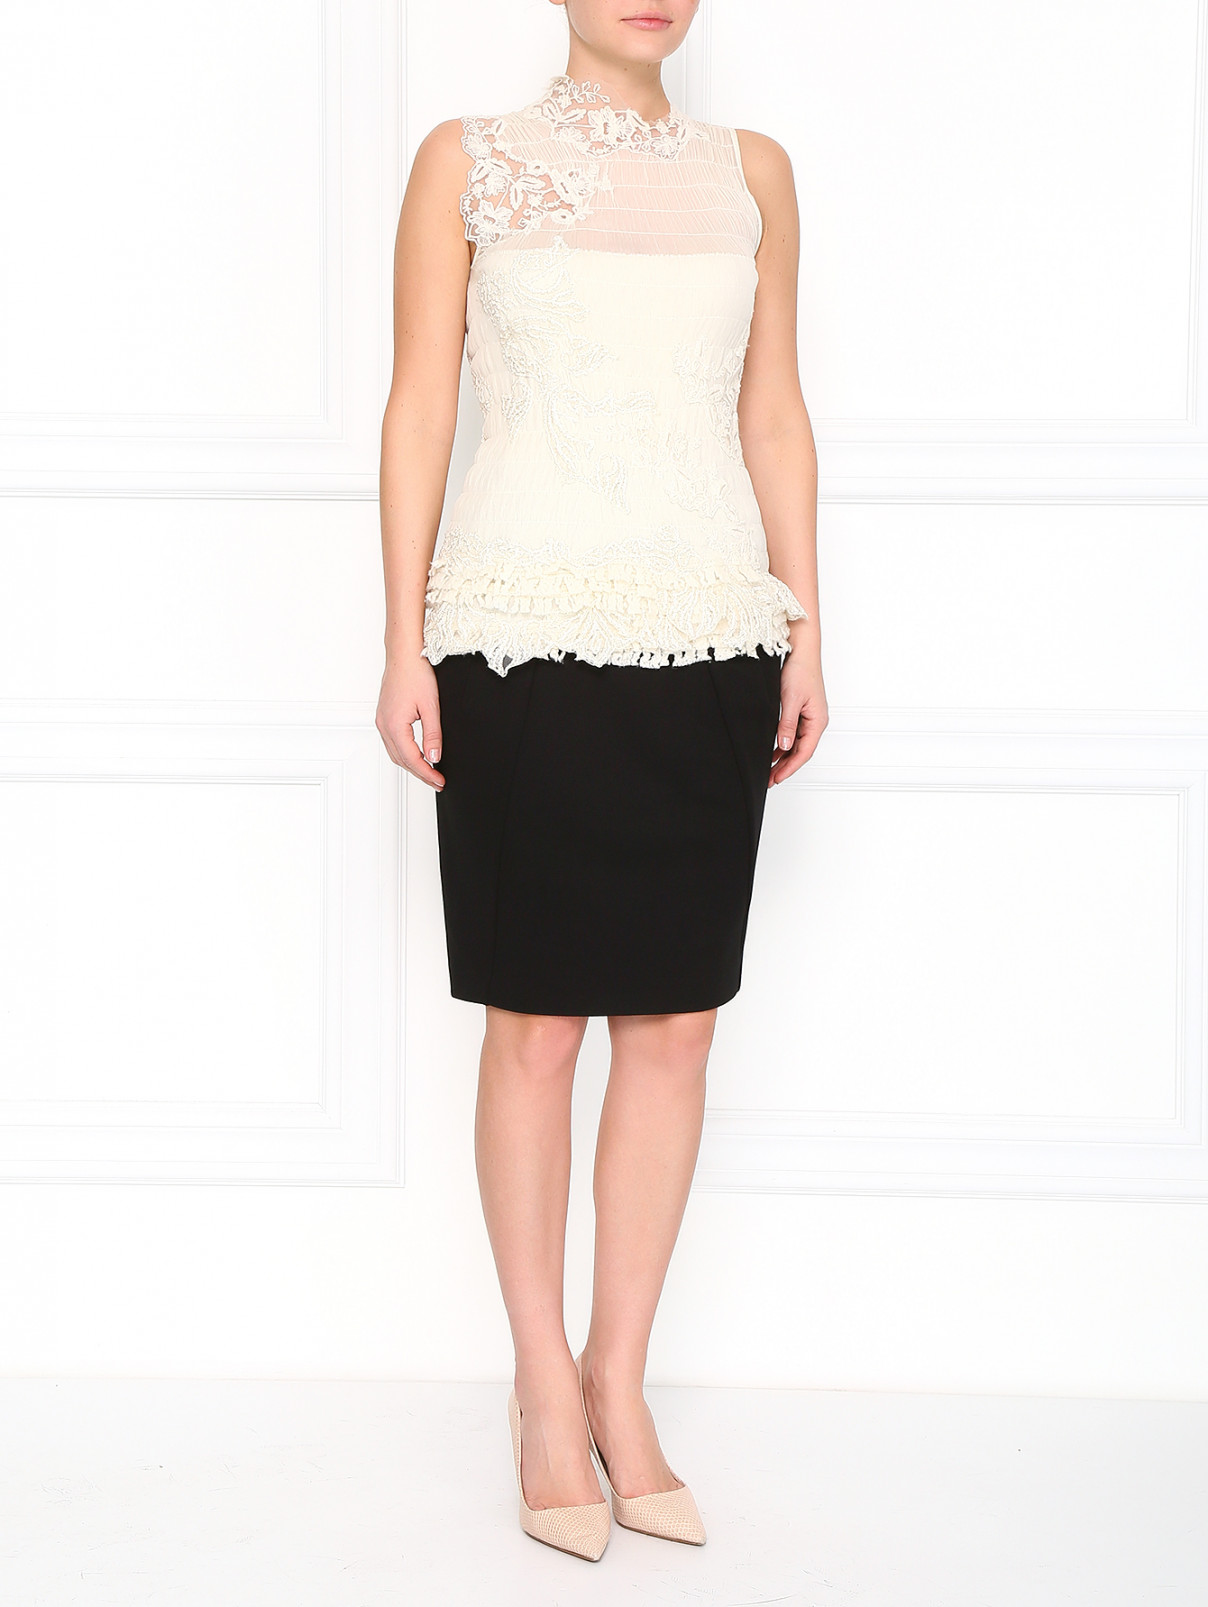 Блуза из кашемира и шелка, декорированная кружевом Ermanno Scervino  –  Модель Общий вид  – Цвет:  Белый